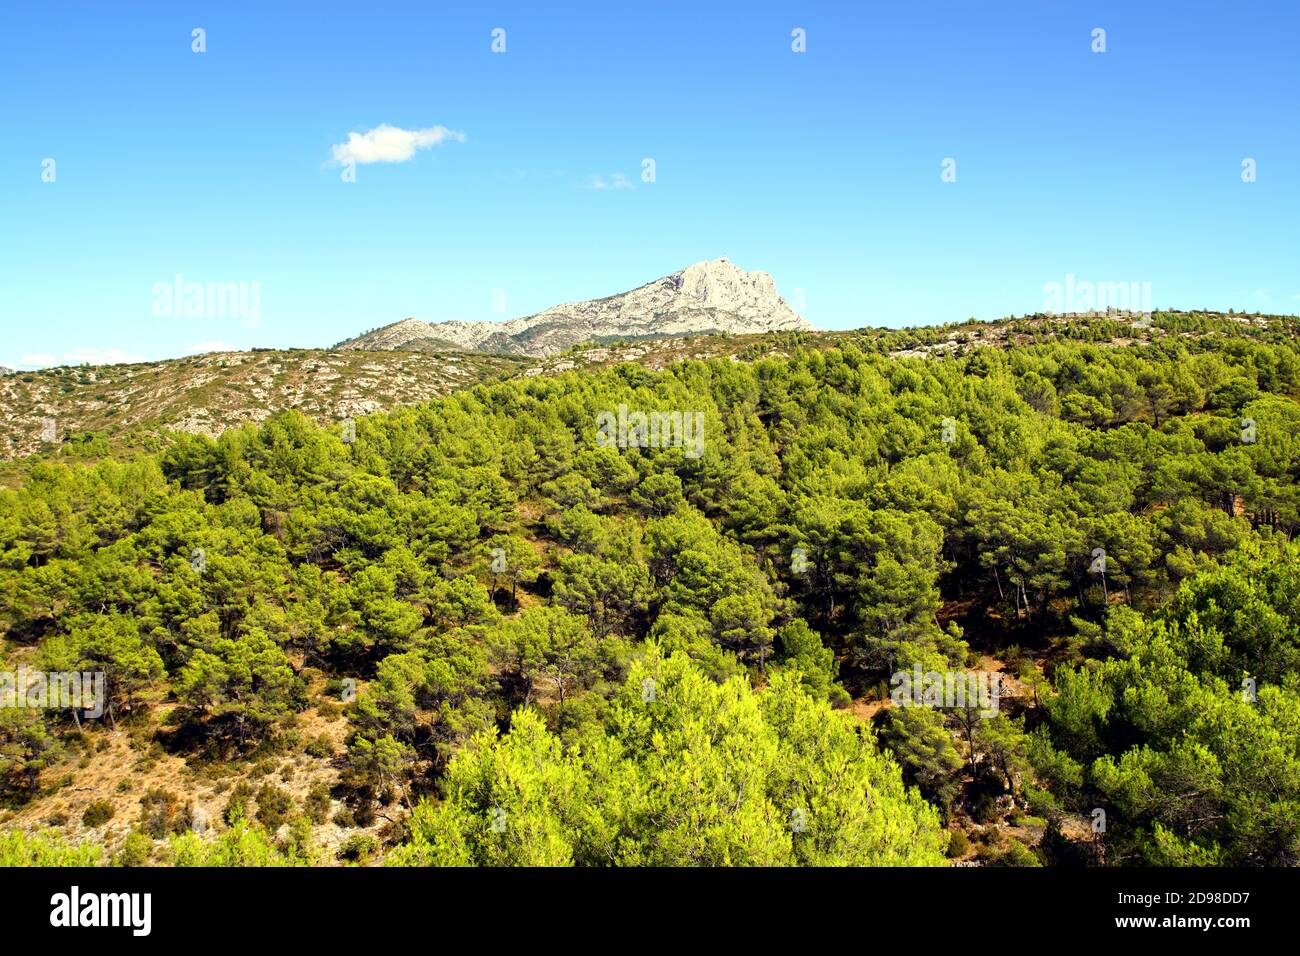 Der Sainte-Victoire Berg vom Zola Dam Wanderwege in der Nähe von Aix-en-Provence, Frankreich Stockfoto